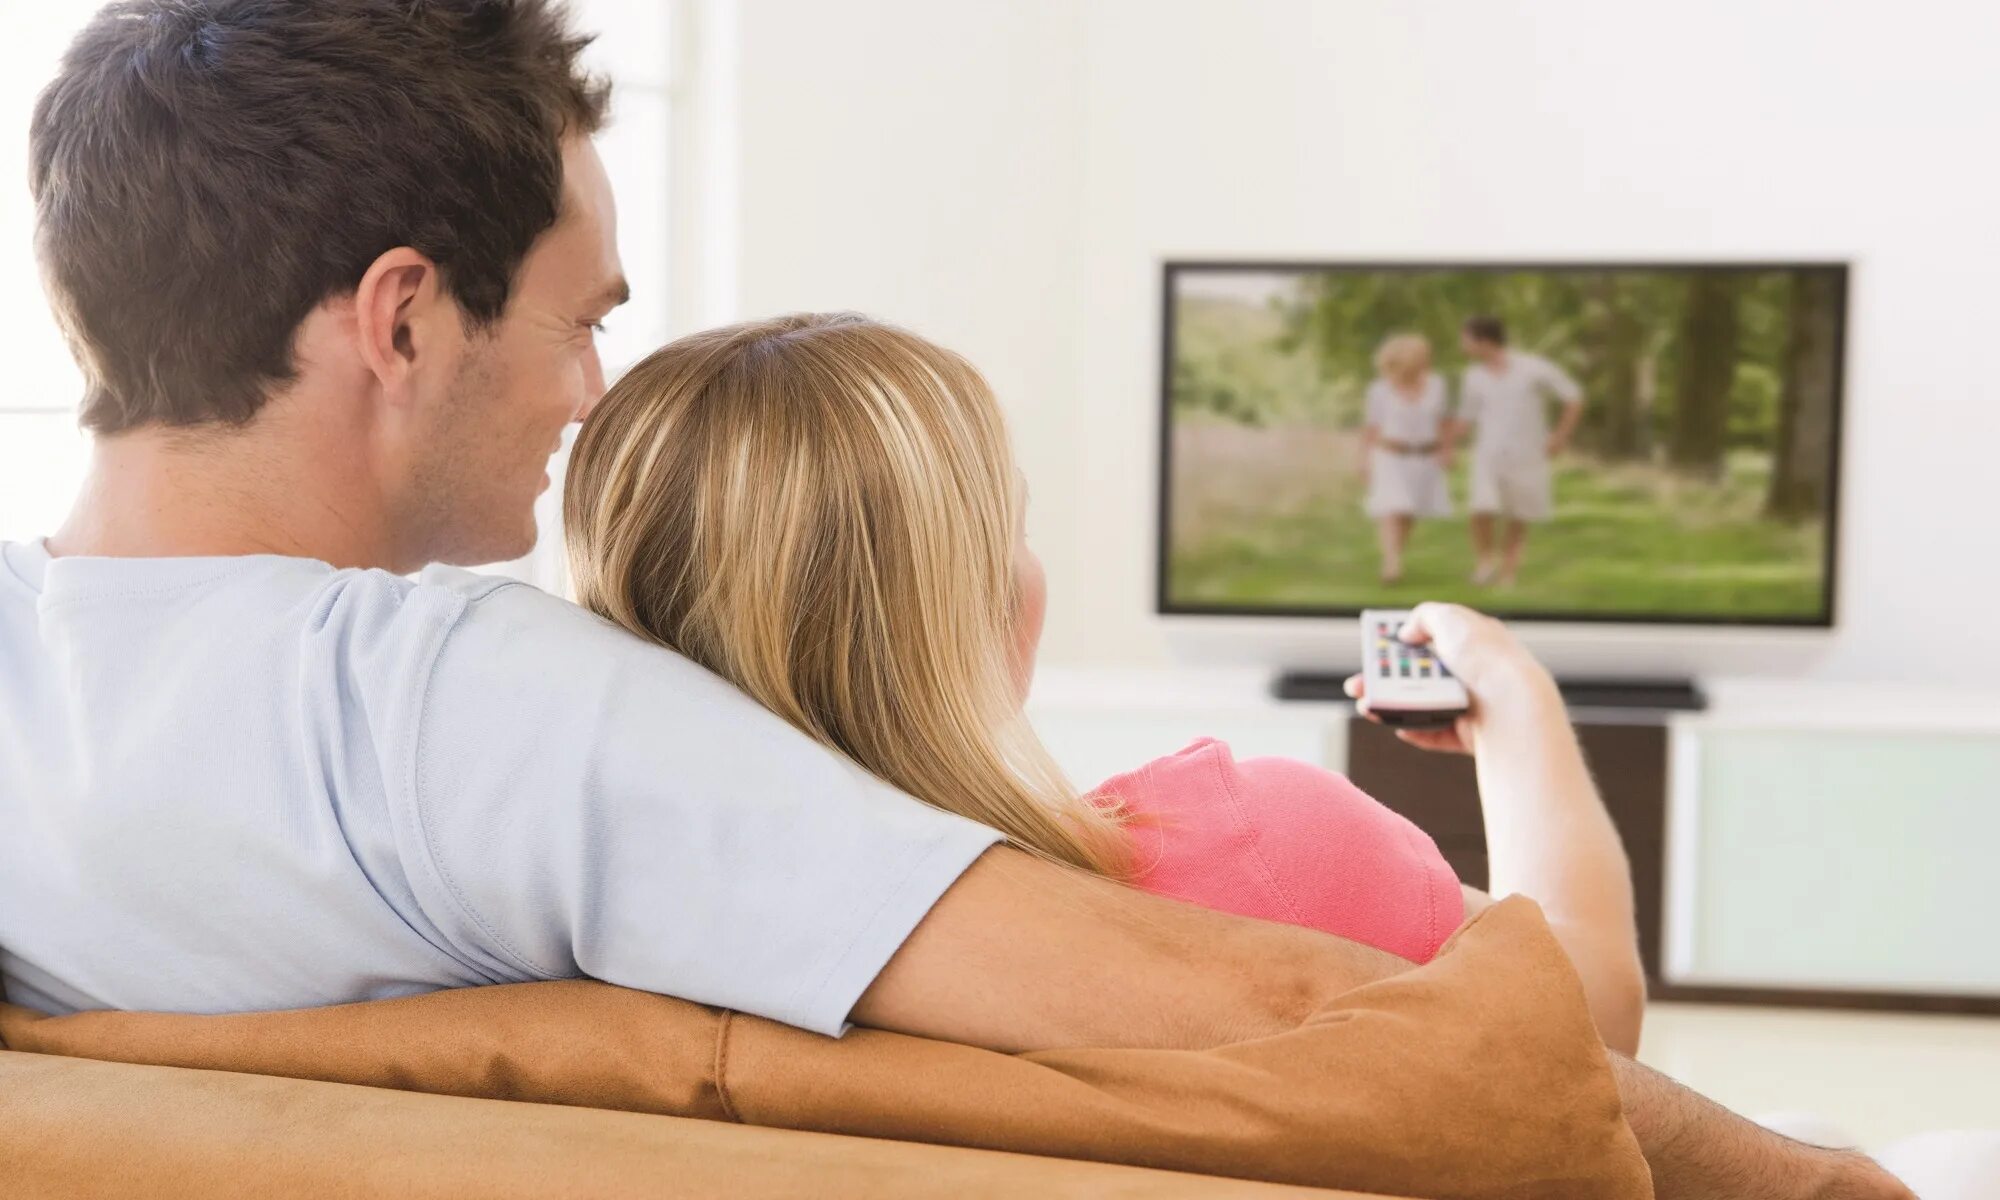 Тоже есть телевизор. Человек телевизор. Человек перед телевизором. Пара перед телевизором. Пара на диване перед телевизором.